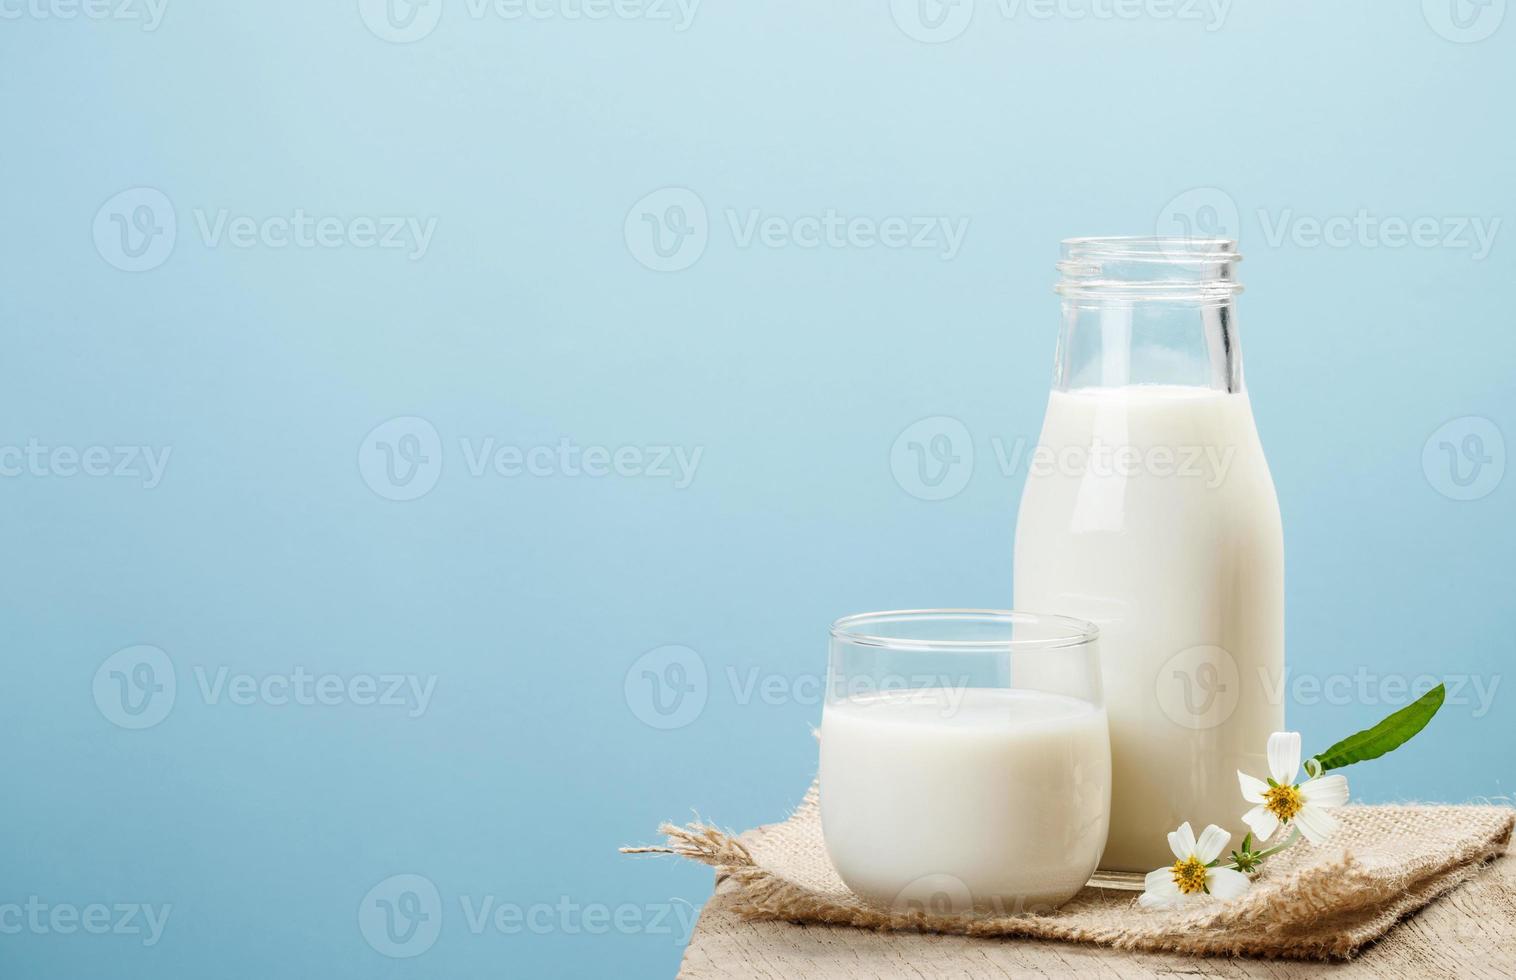 uma garrafa de leite e um copo de leite em uma mesa de madeira em um fundo azul, produtos lácteos saborosos, nutritivos e saudáveis foto